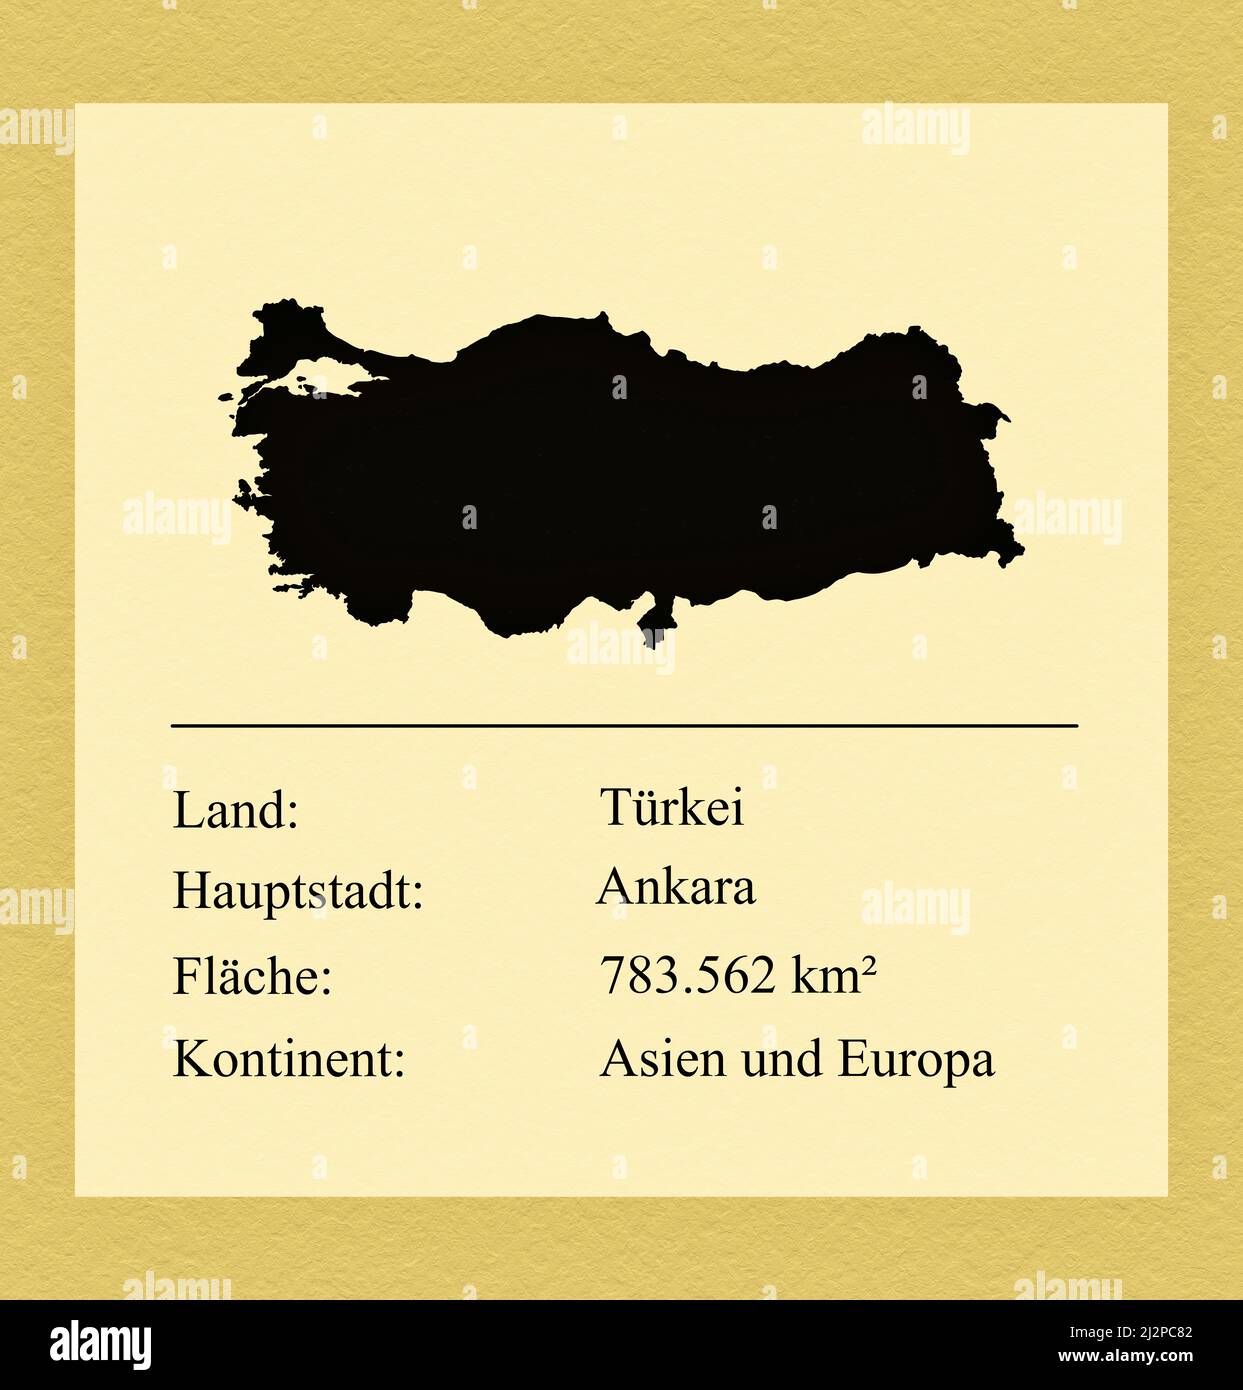 Umrisse des Landes Türkei, darunter ein kleiner Steckbrief mit Ländernamen, Hauptstadt, Fläche und Kontinent Stock Photo